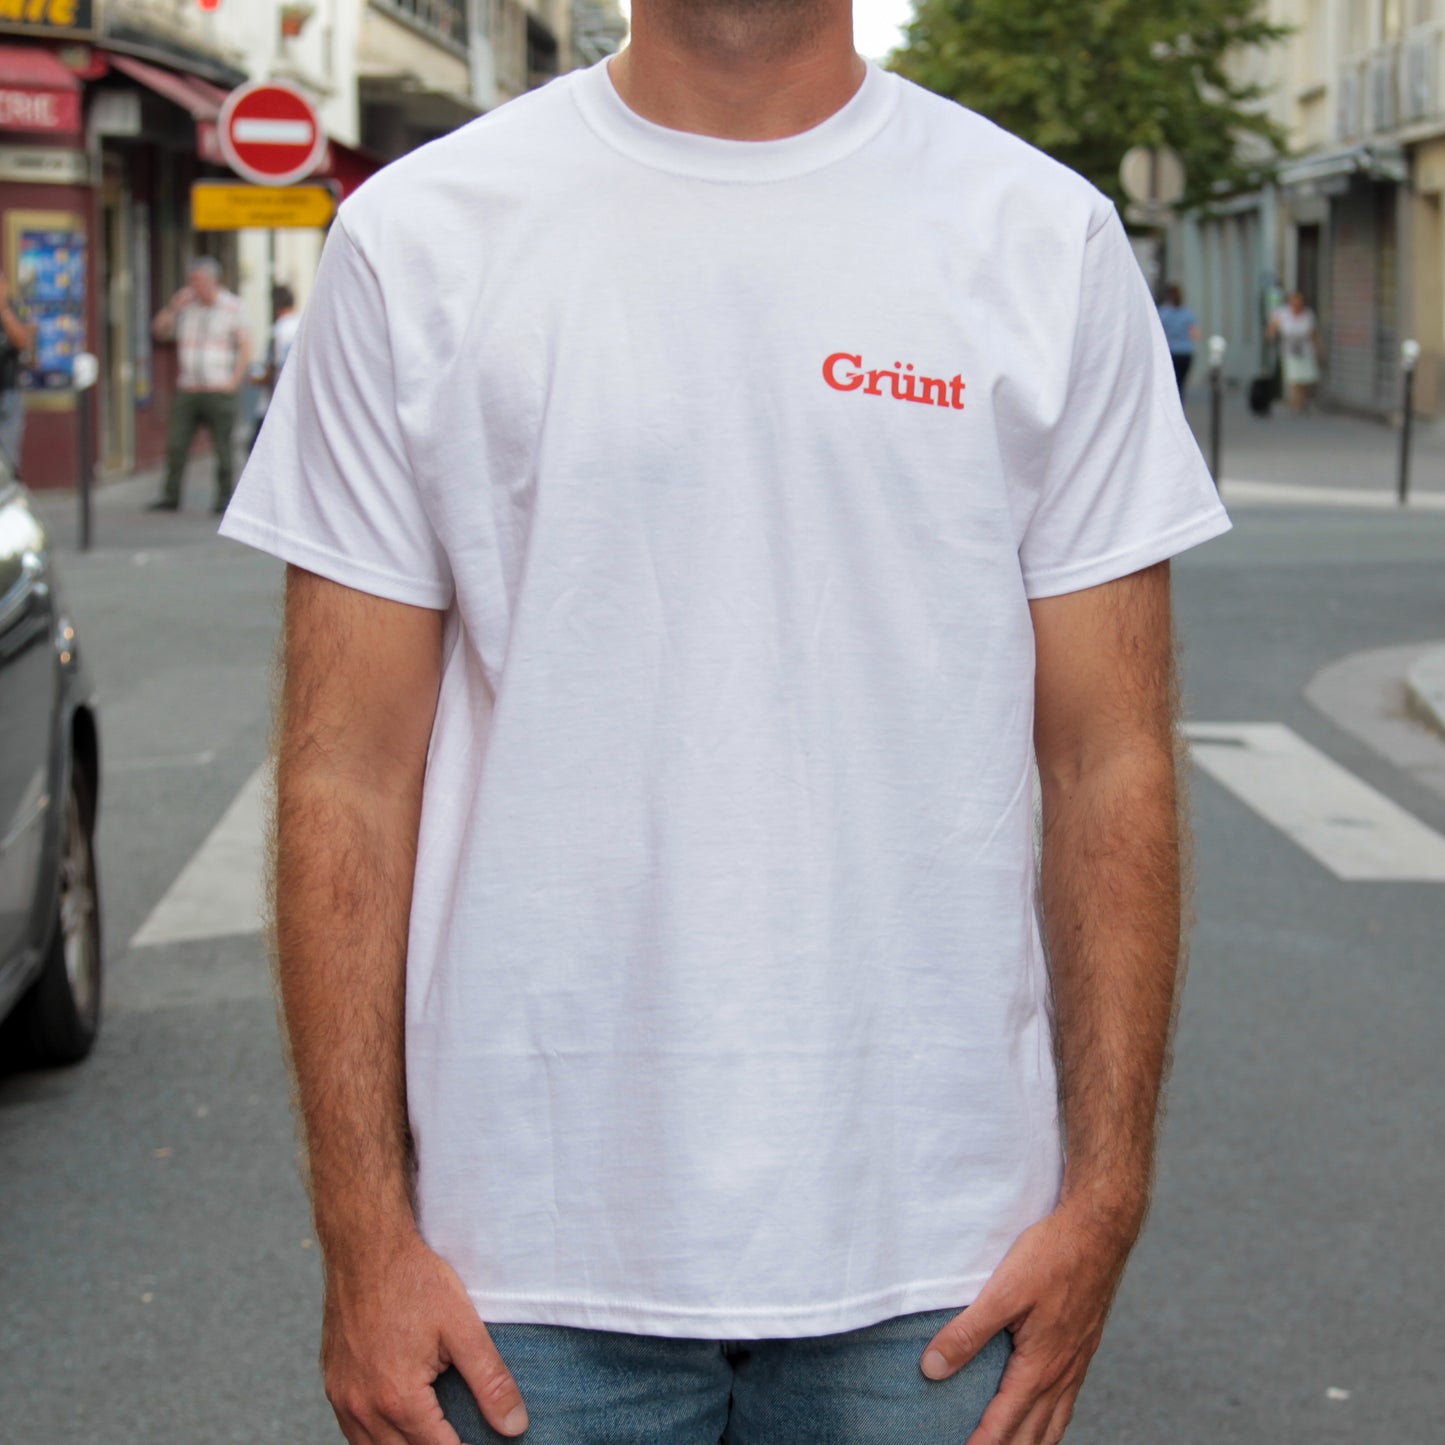 T-shirt Grünt Festival 2 (édition limitée)